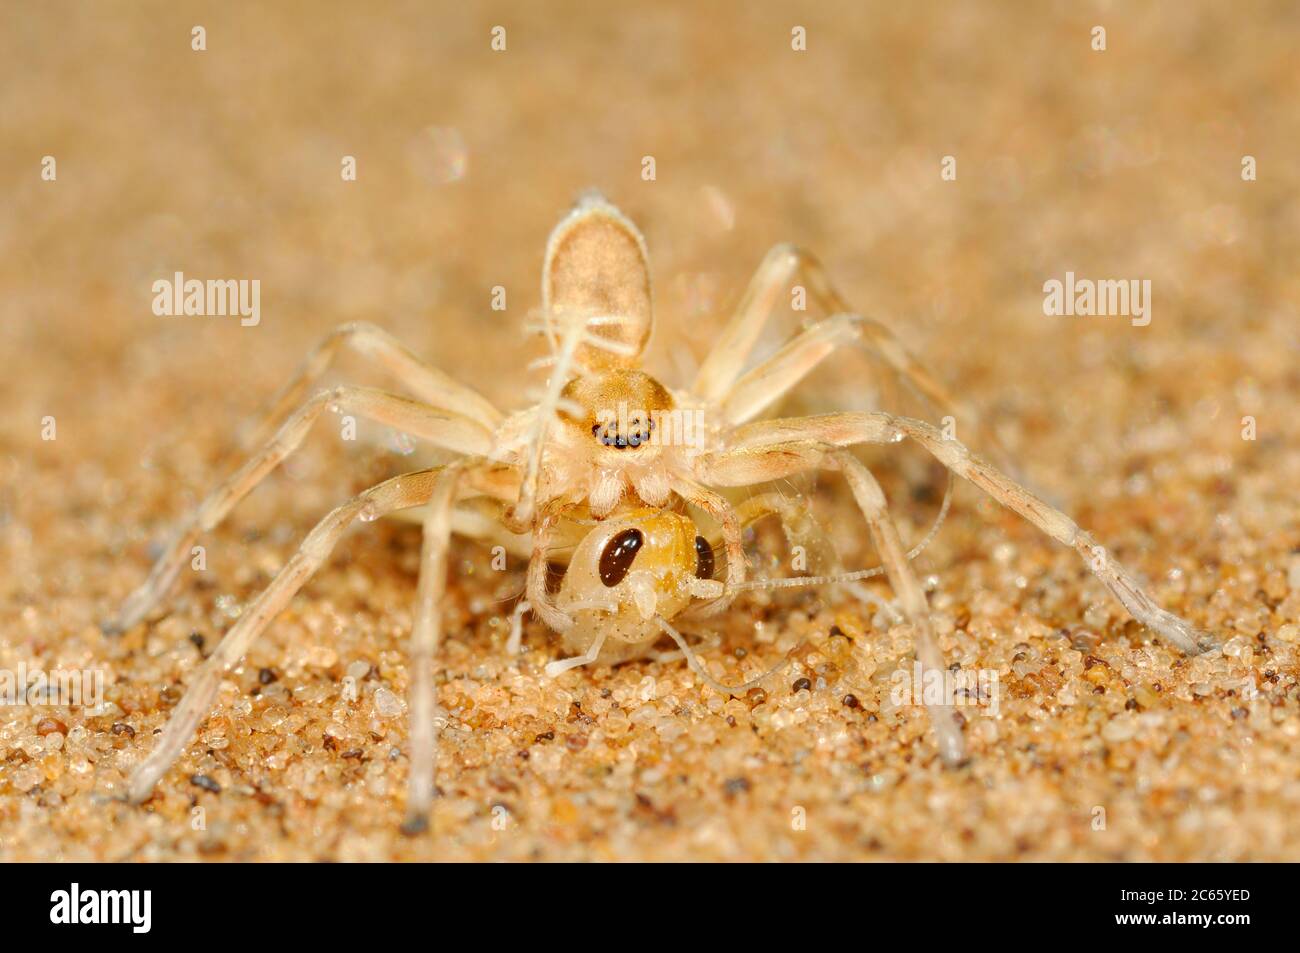 Araignée roue d'or (Carparachne aureoflava) l'araignée roue d'or (Carparachne aureoflava) est vraiment une créature unique et étonnante du magnifique désert du Namib. Banque D'Images